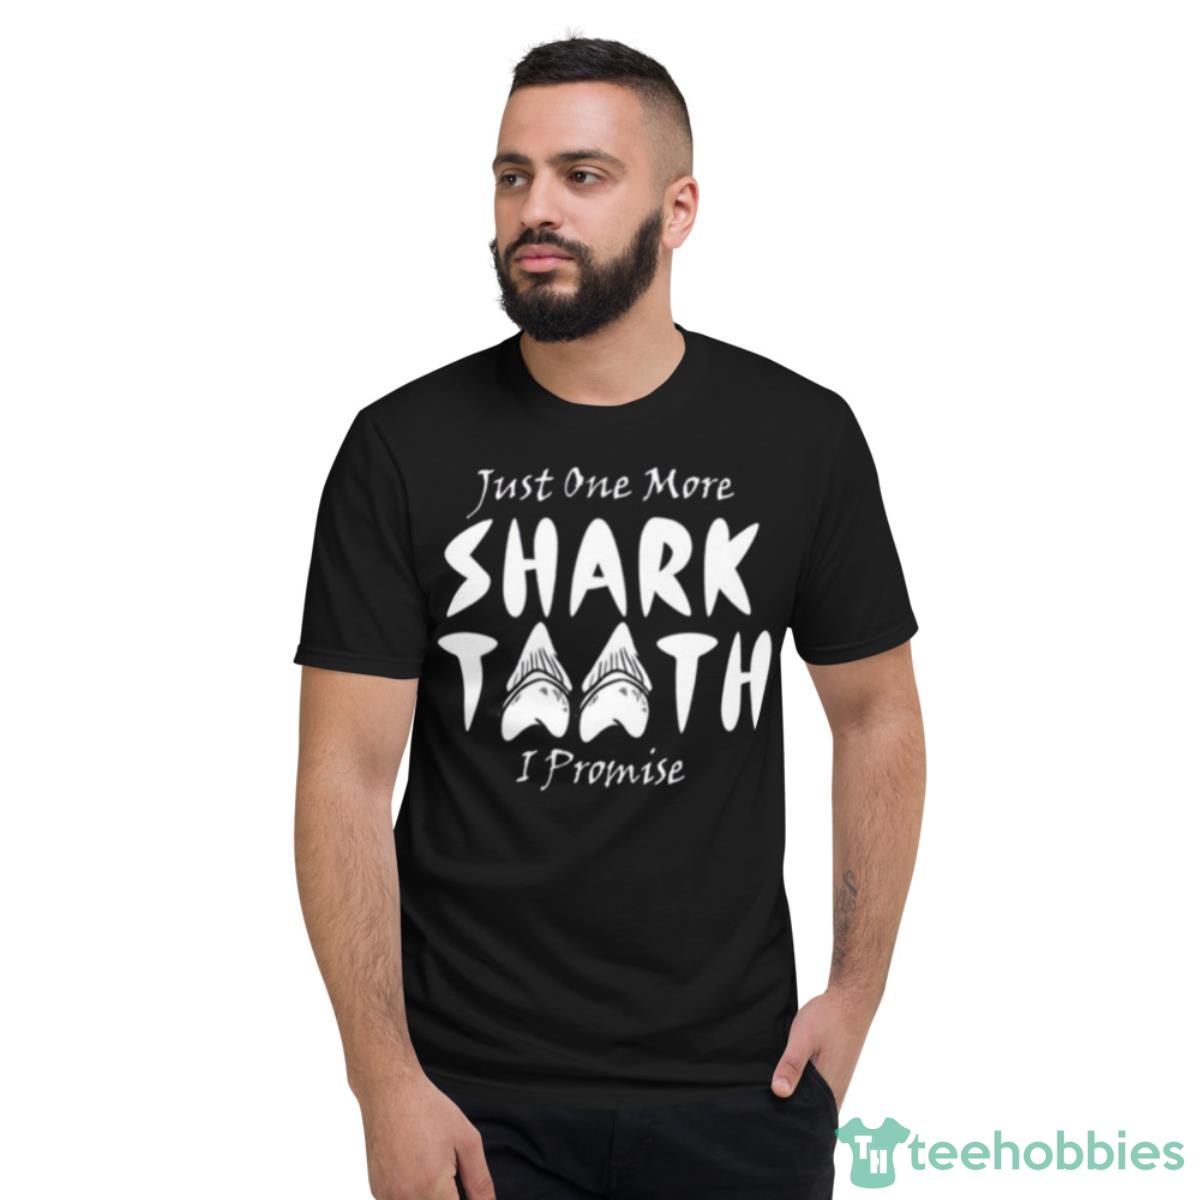 One More Shark Tooth Jurassic World Shirt - Short Sleeve T-Shirt